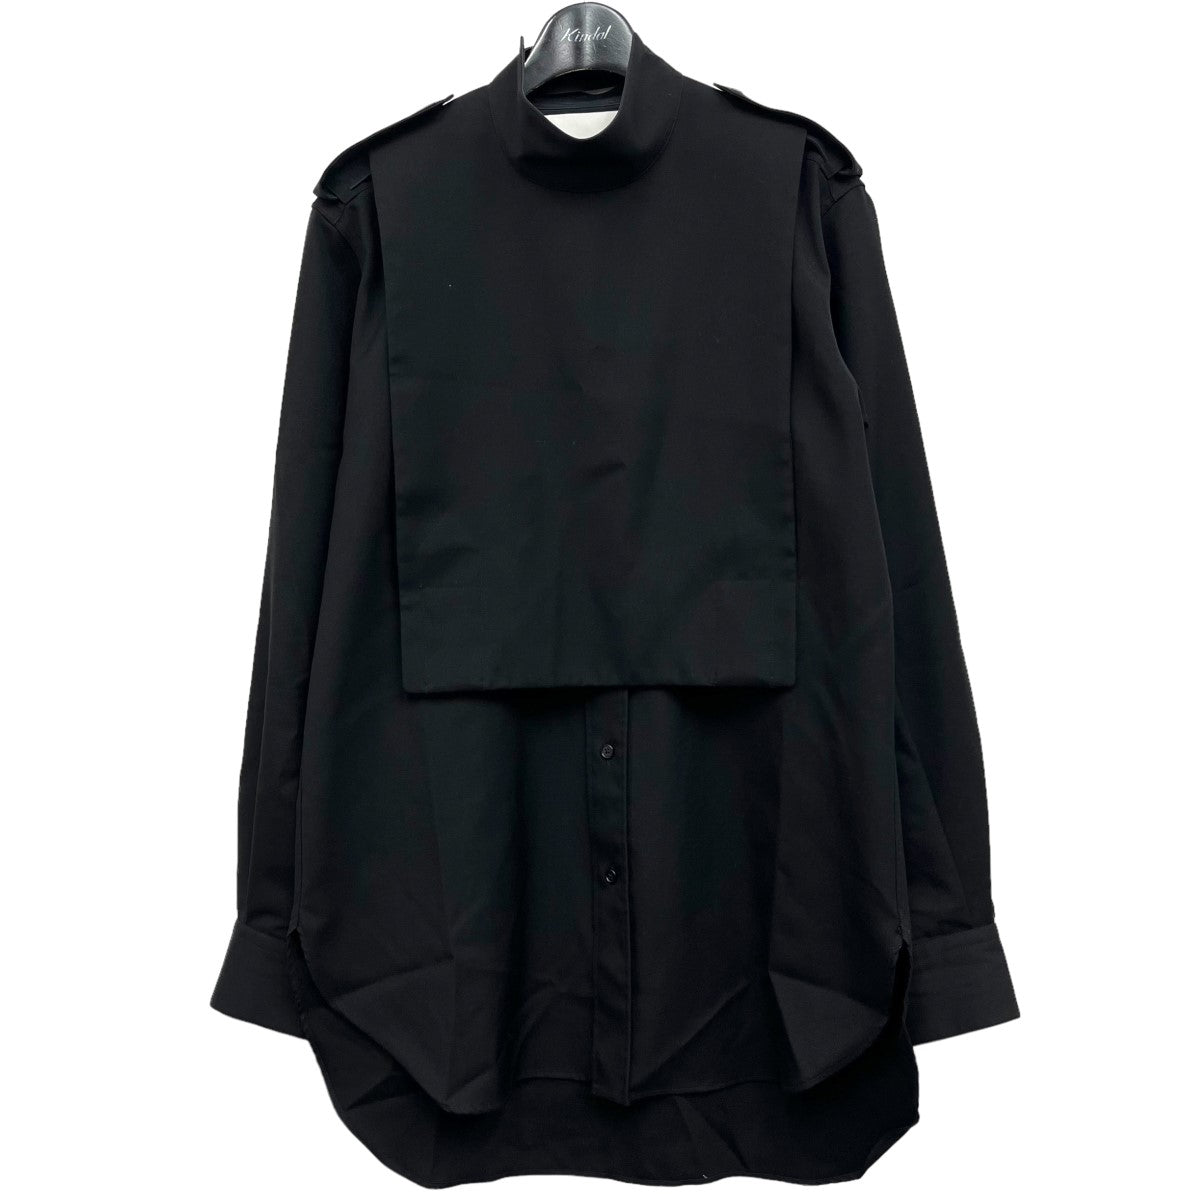 JIL SANDER(ジルサンダー) ウールシャツ JSMR742537 ブラック サイズ 